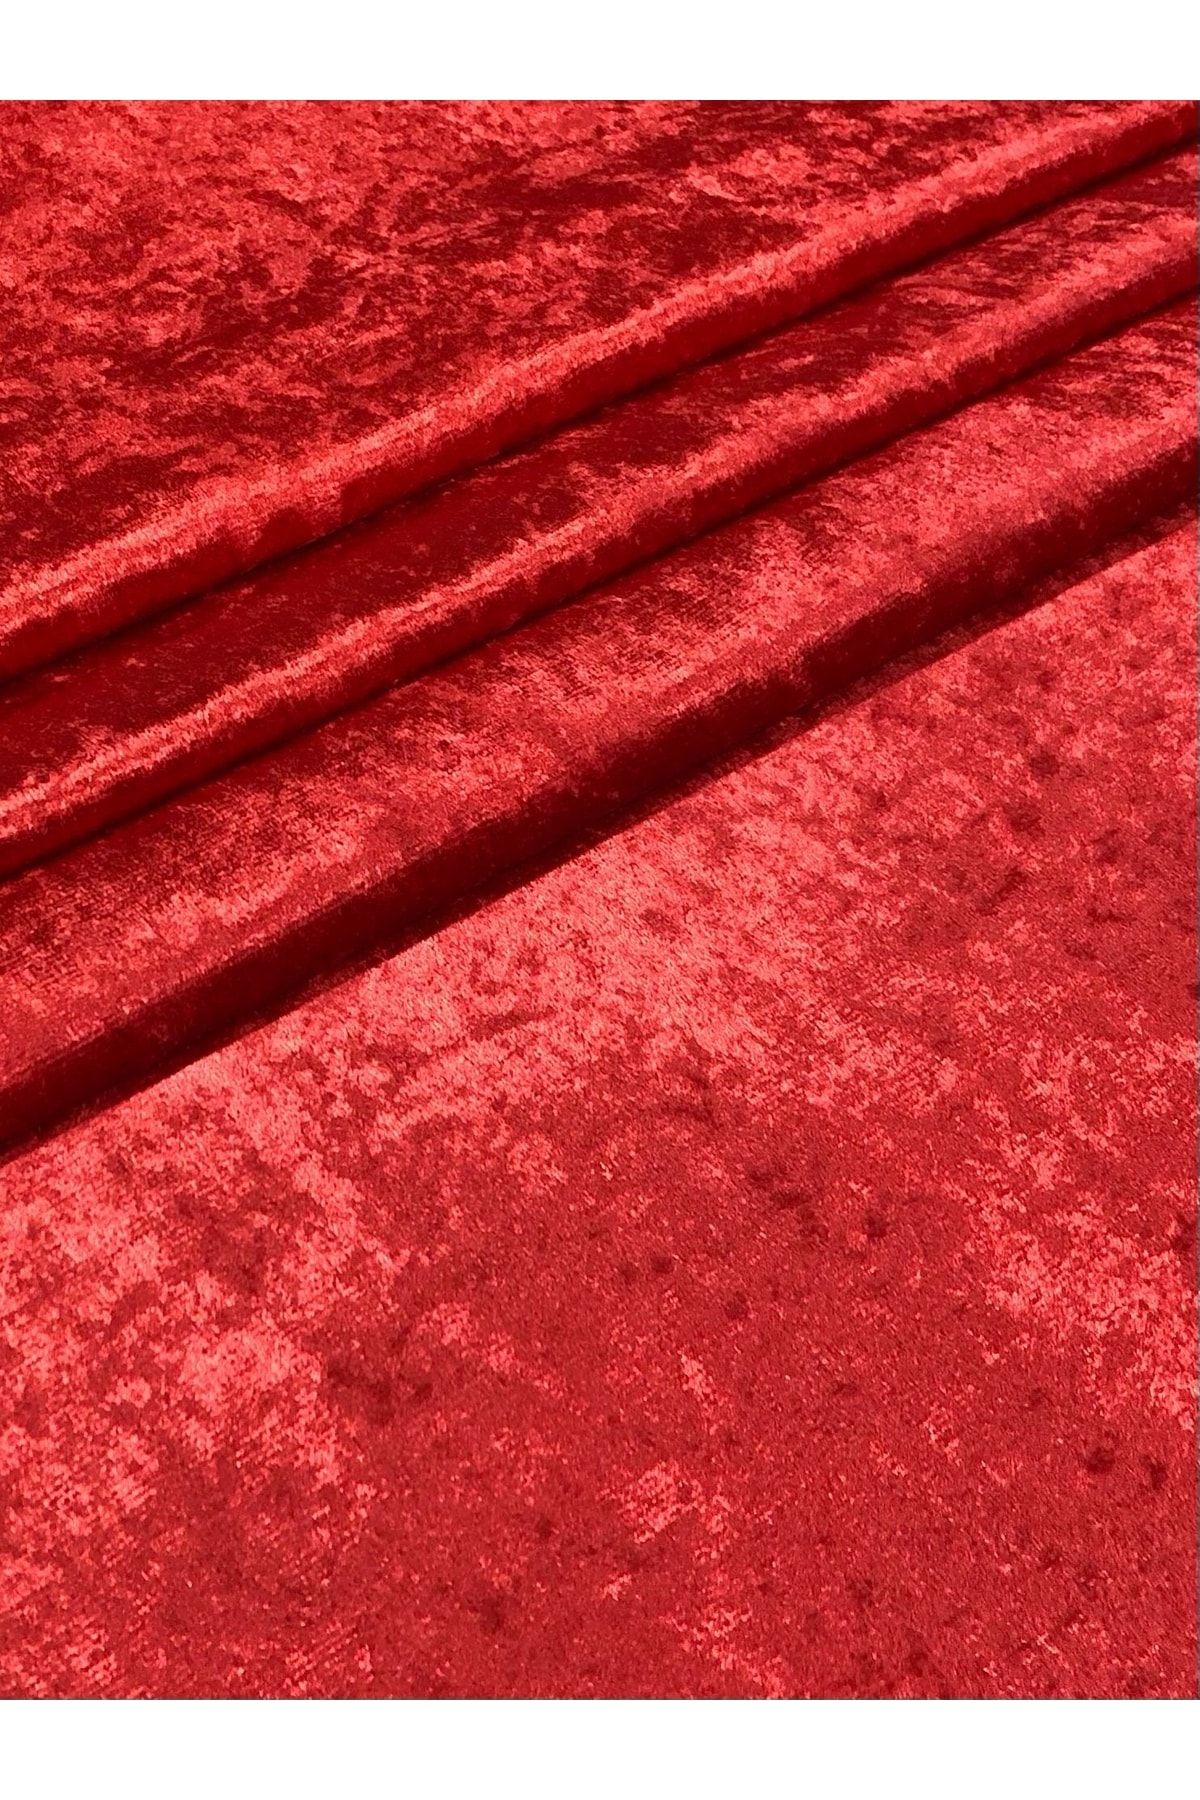 Enesar Home Parlak Kadife Kırmızı Kumaş Döşemelik Kumaş (likrasız & Astarlı)